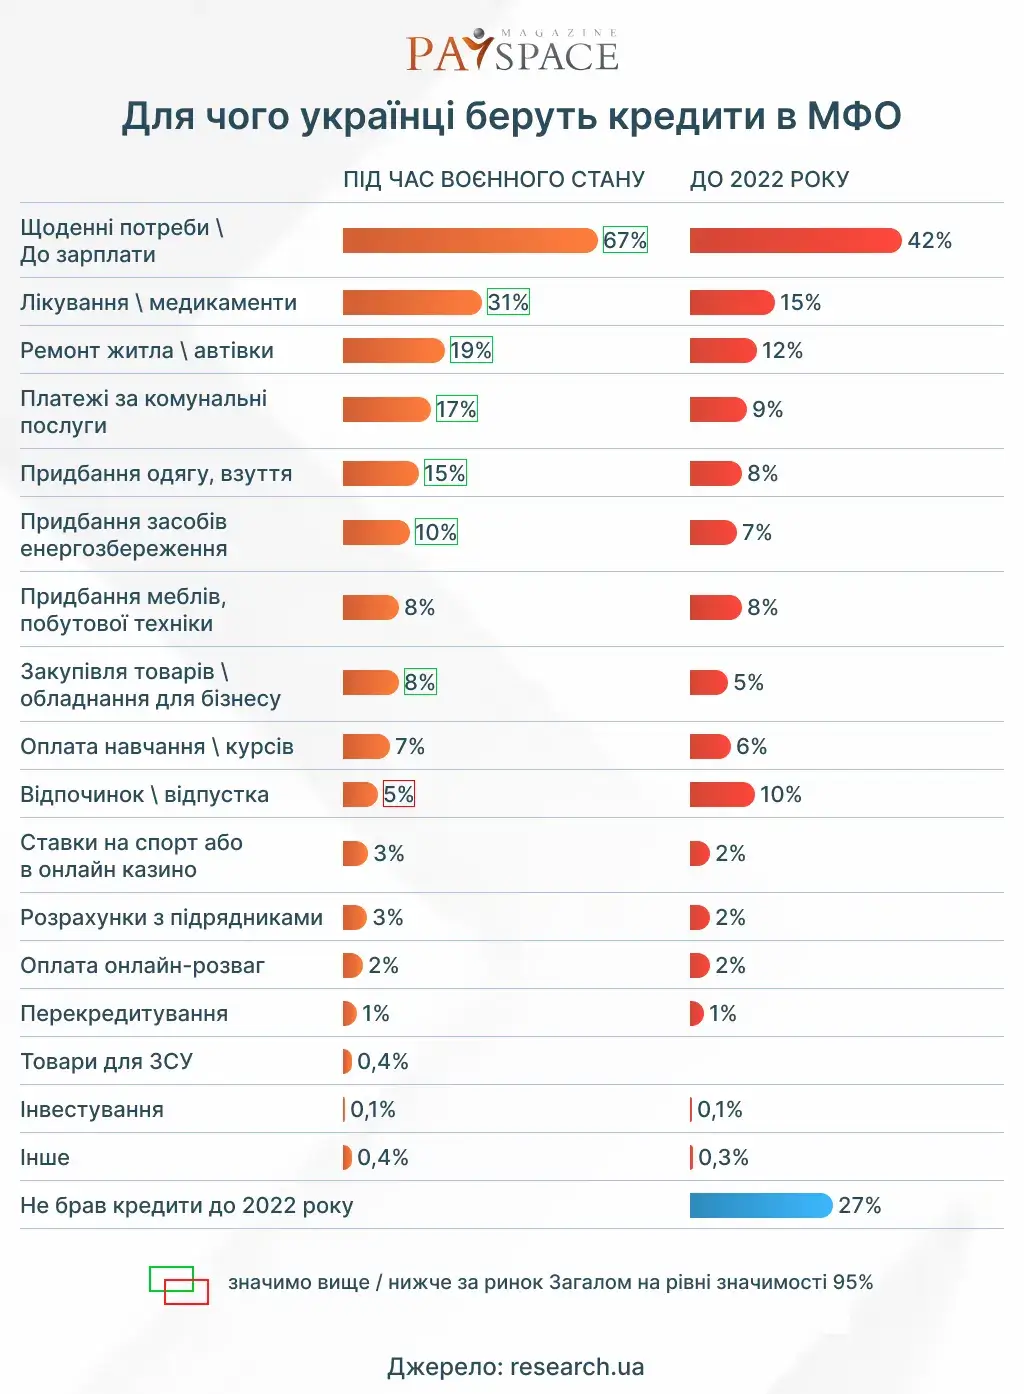 Як зміниться небанківське споживче онлайн кредитування в Україні — прогноз